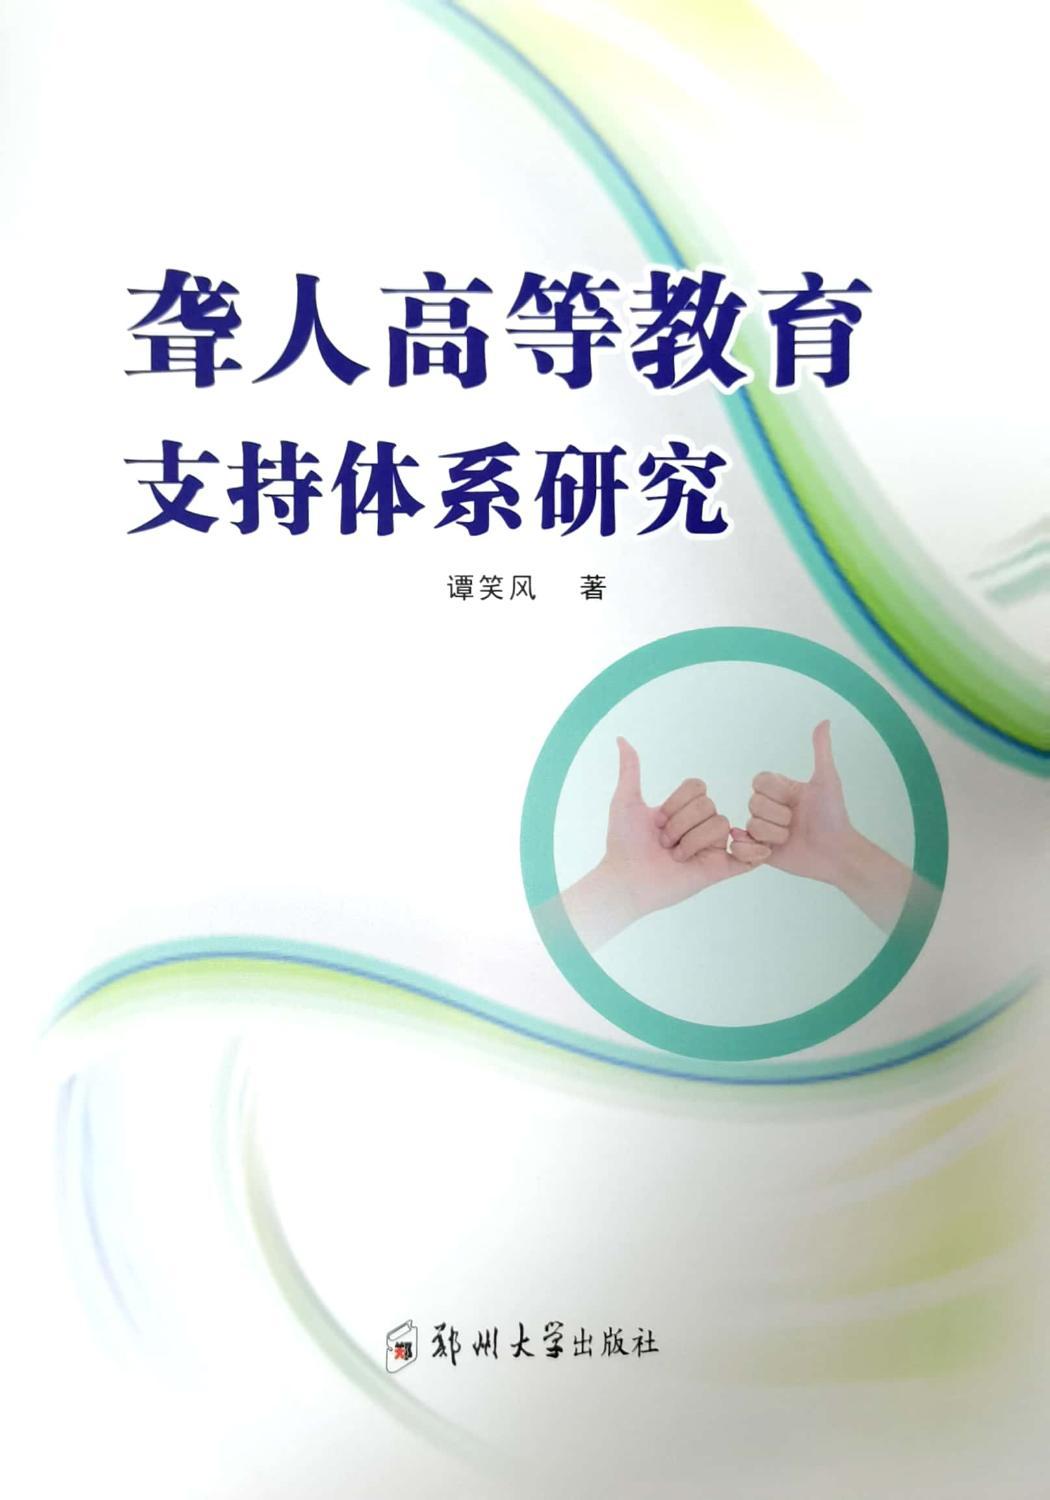 正版新书 聋人高等教育支持体系研究 谭笑风著 9787564585532 郑州大学出版社